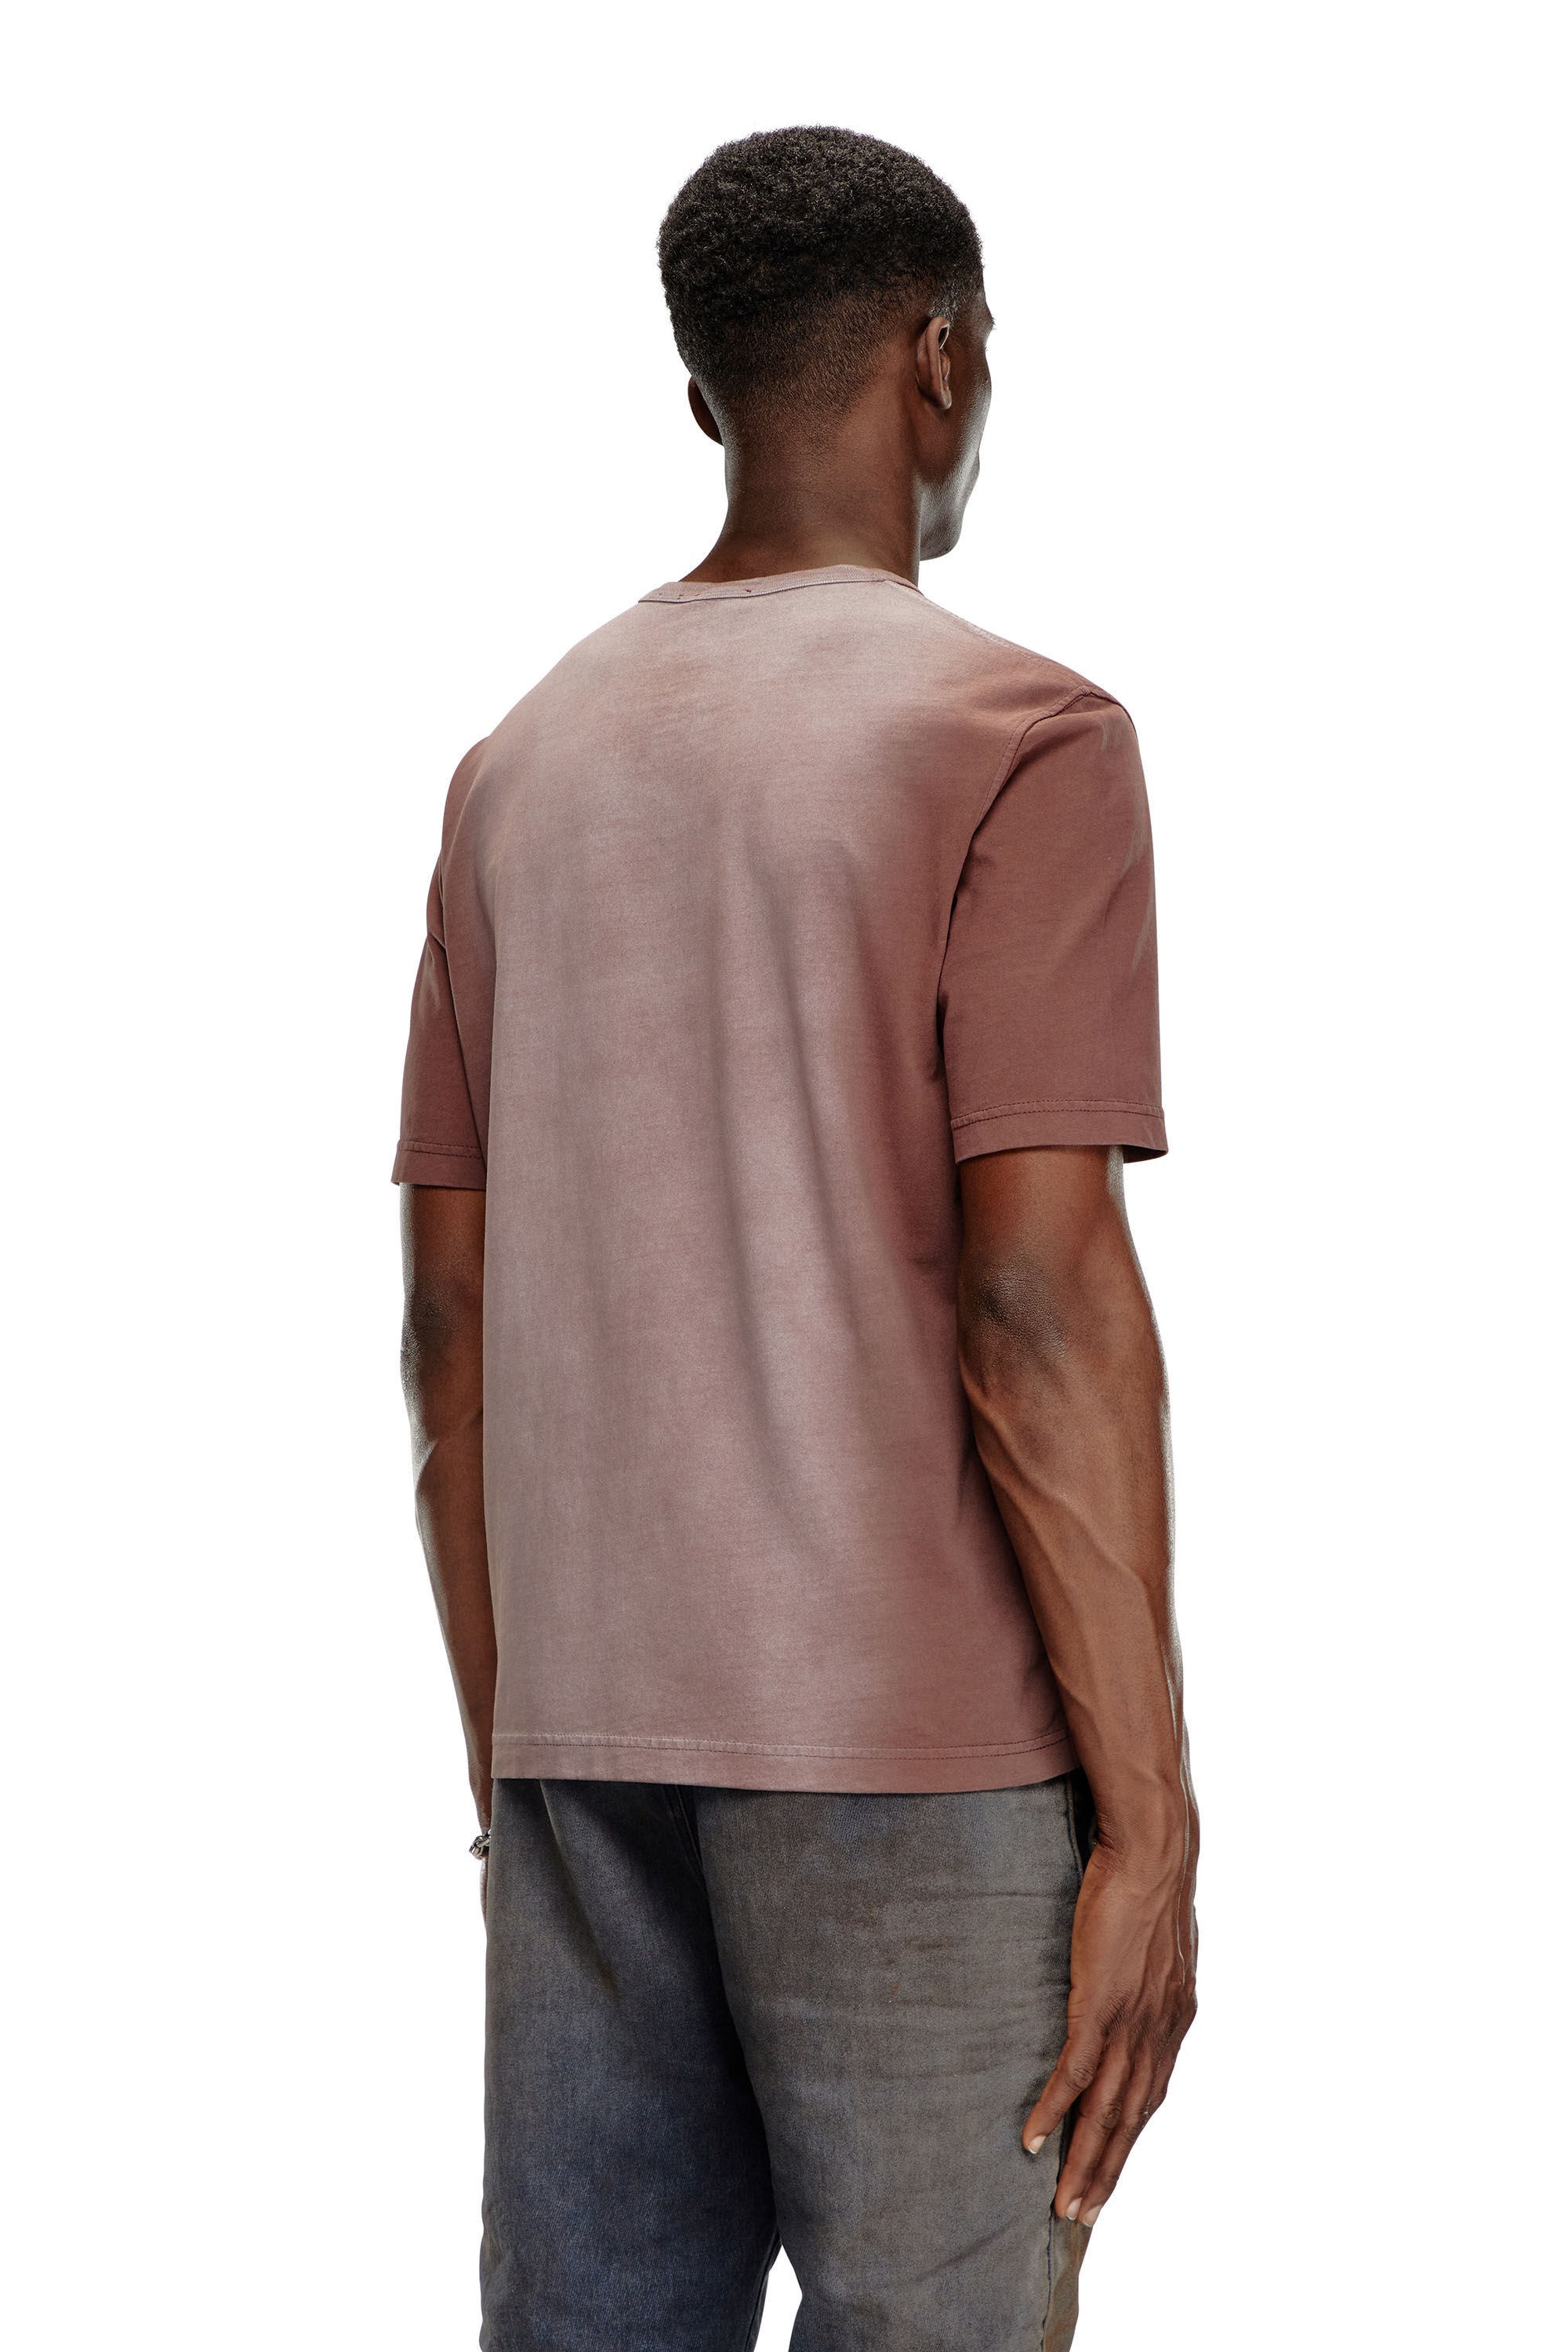 Diesel - T-ADJUST-Q2, Homme T-shirt en jersey de coton pulvérisé in Marron - Image 4